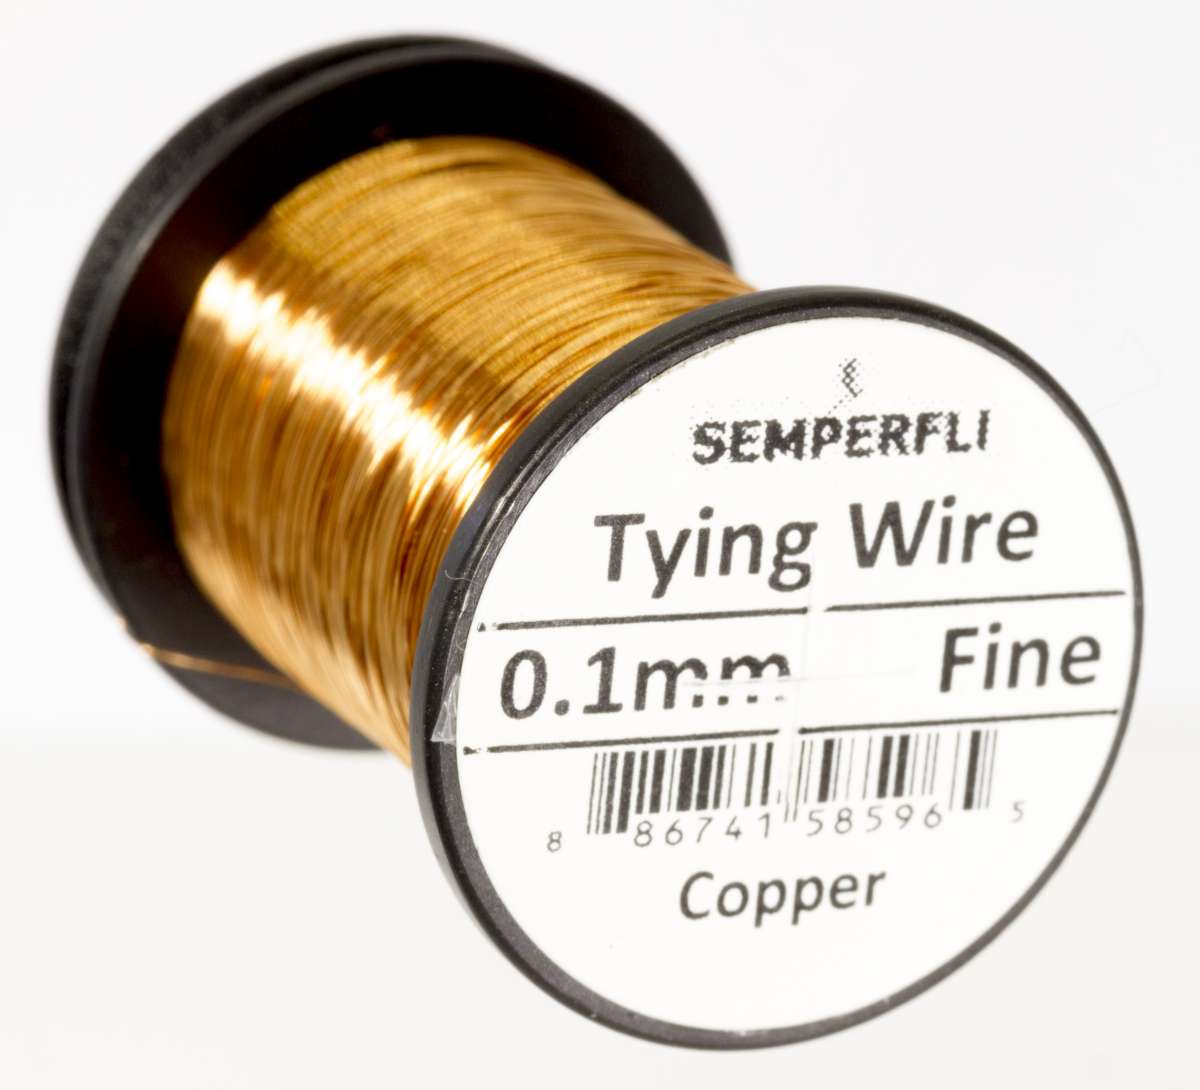 finewire copper